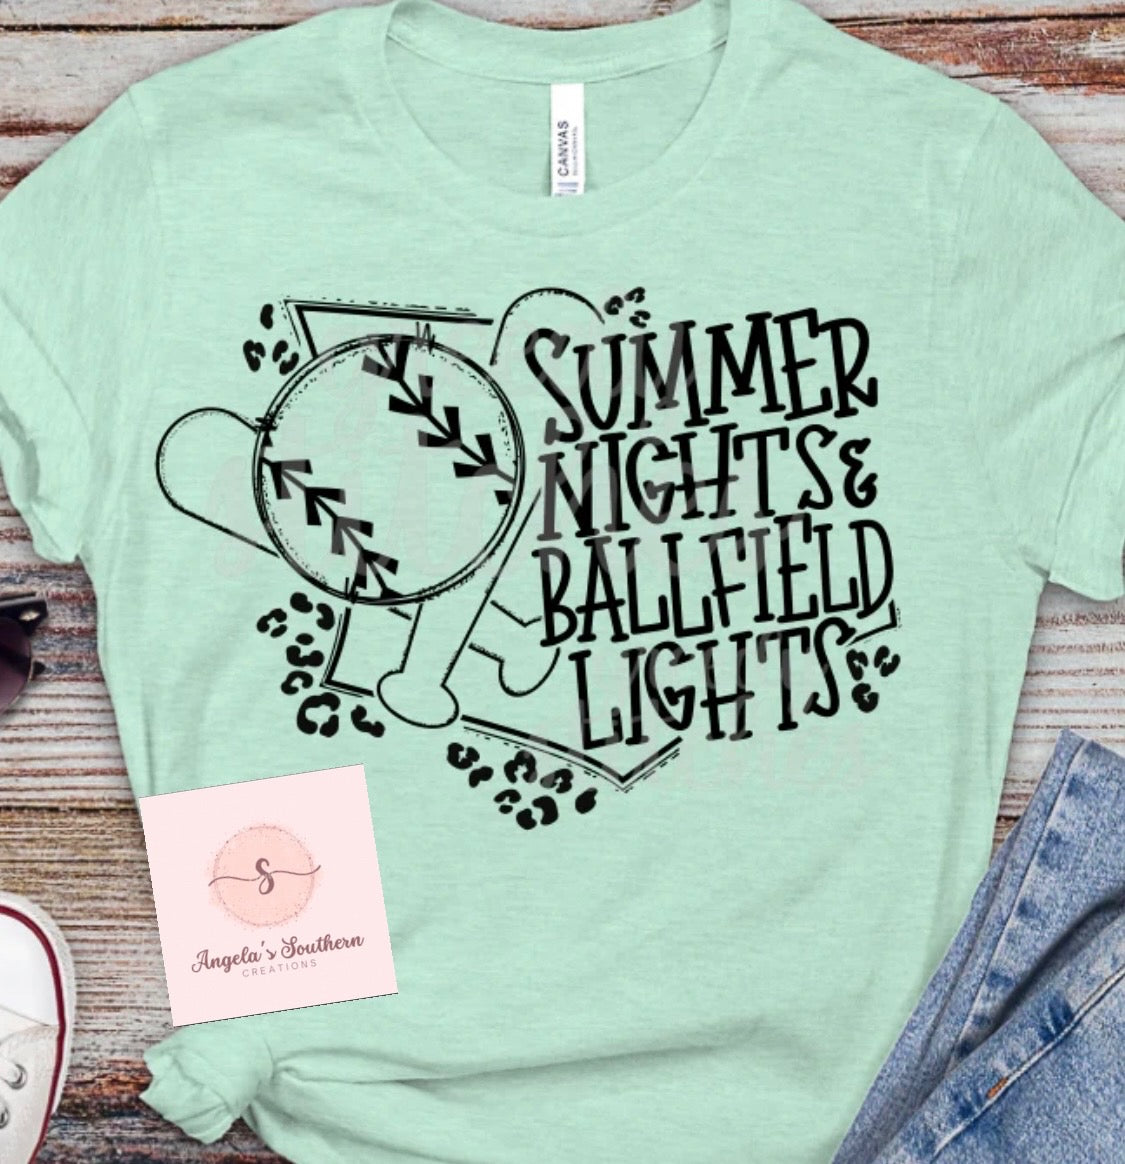 Summer Lights & Ballfield Lights